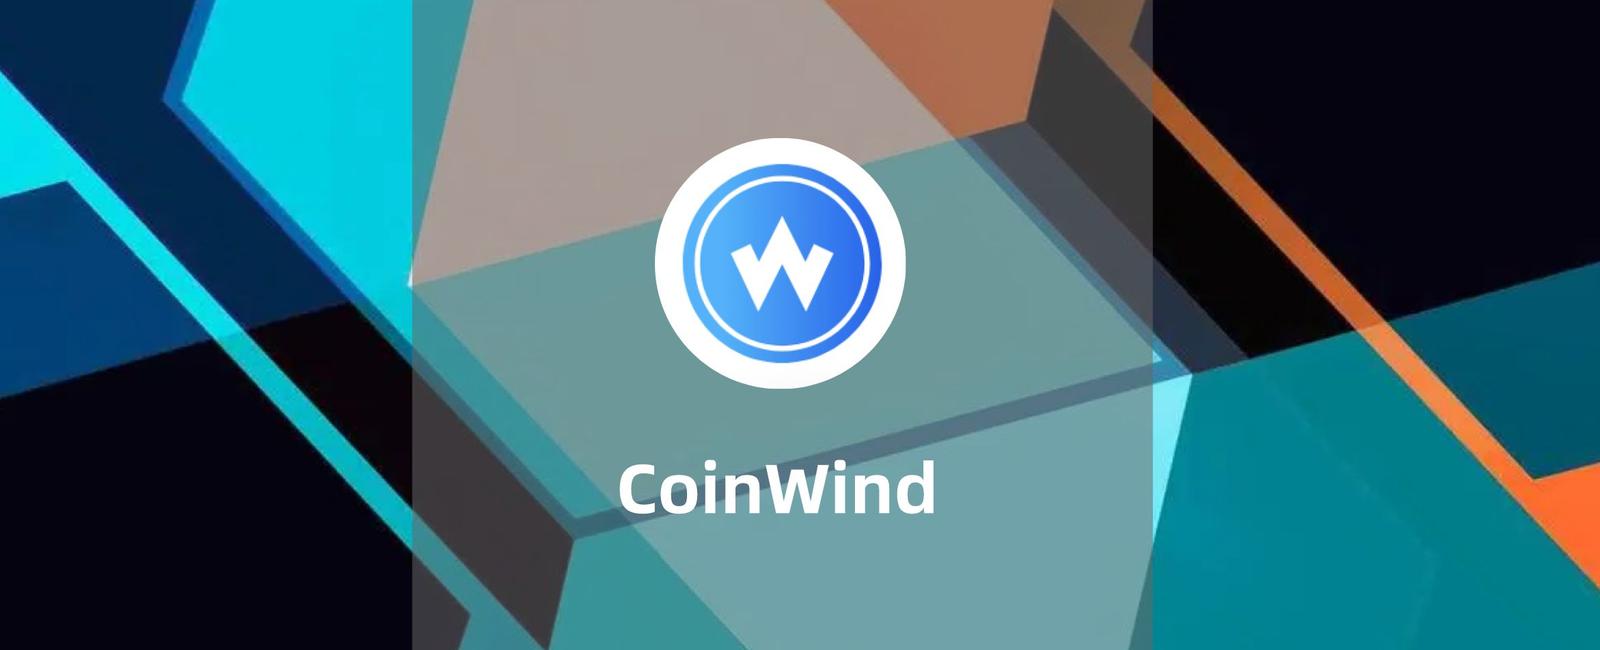 CoinWind:多链DeFi智能挖矿金融平台